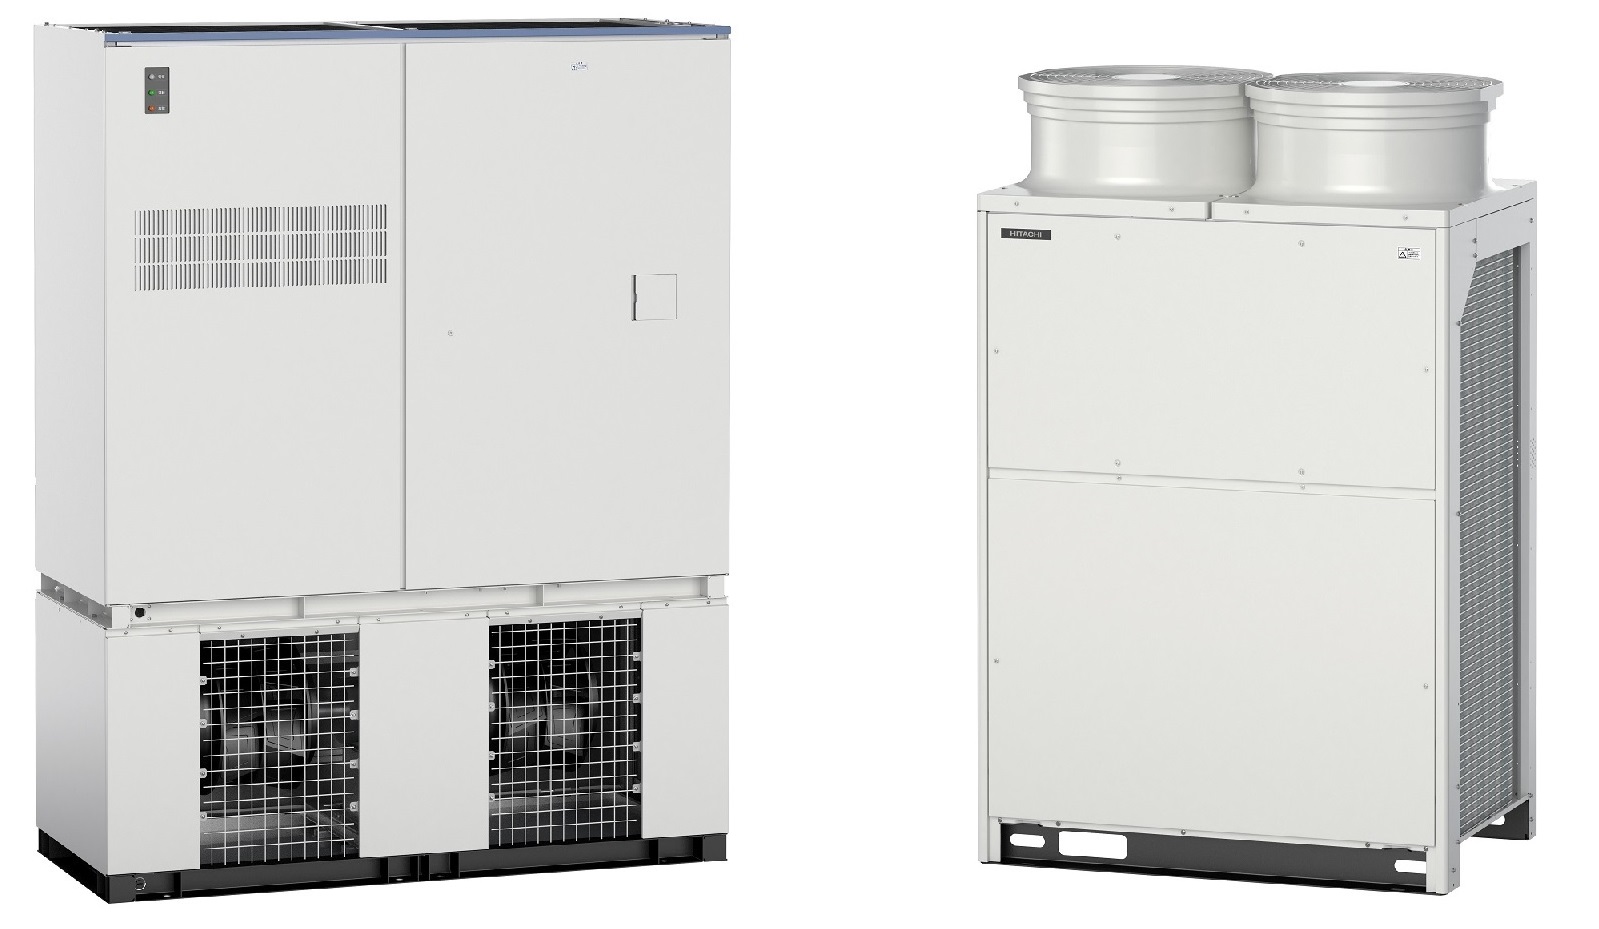 ハイパースケールデータセンターの空調課題を解決する 空冷式パッケージエアコンを開発